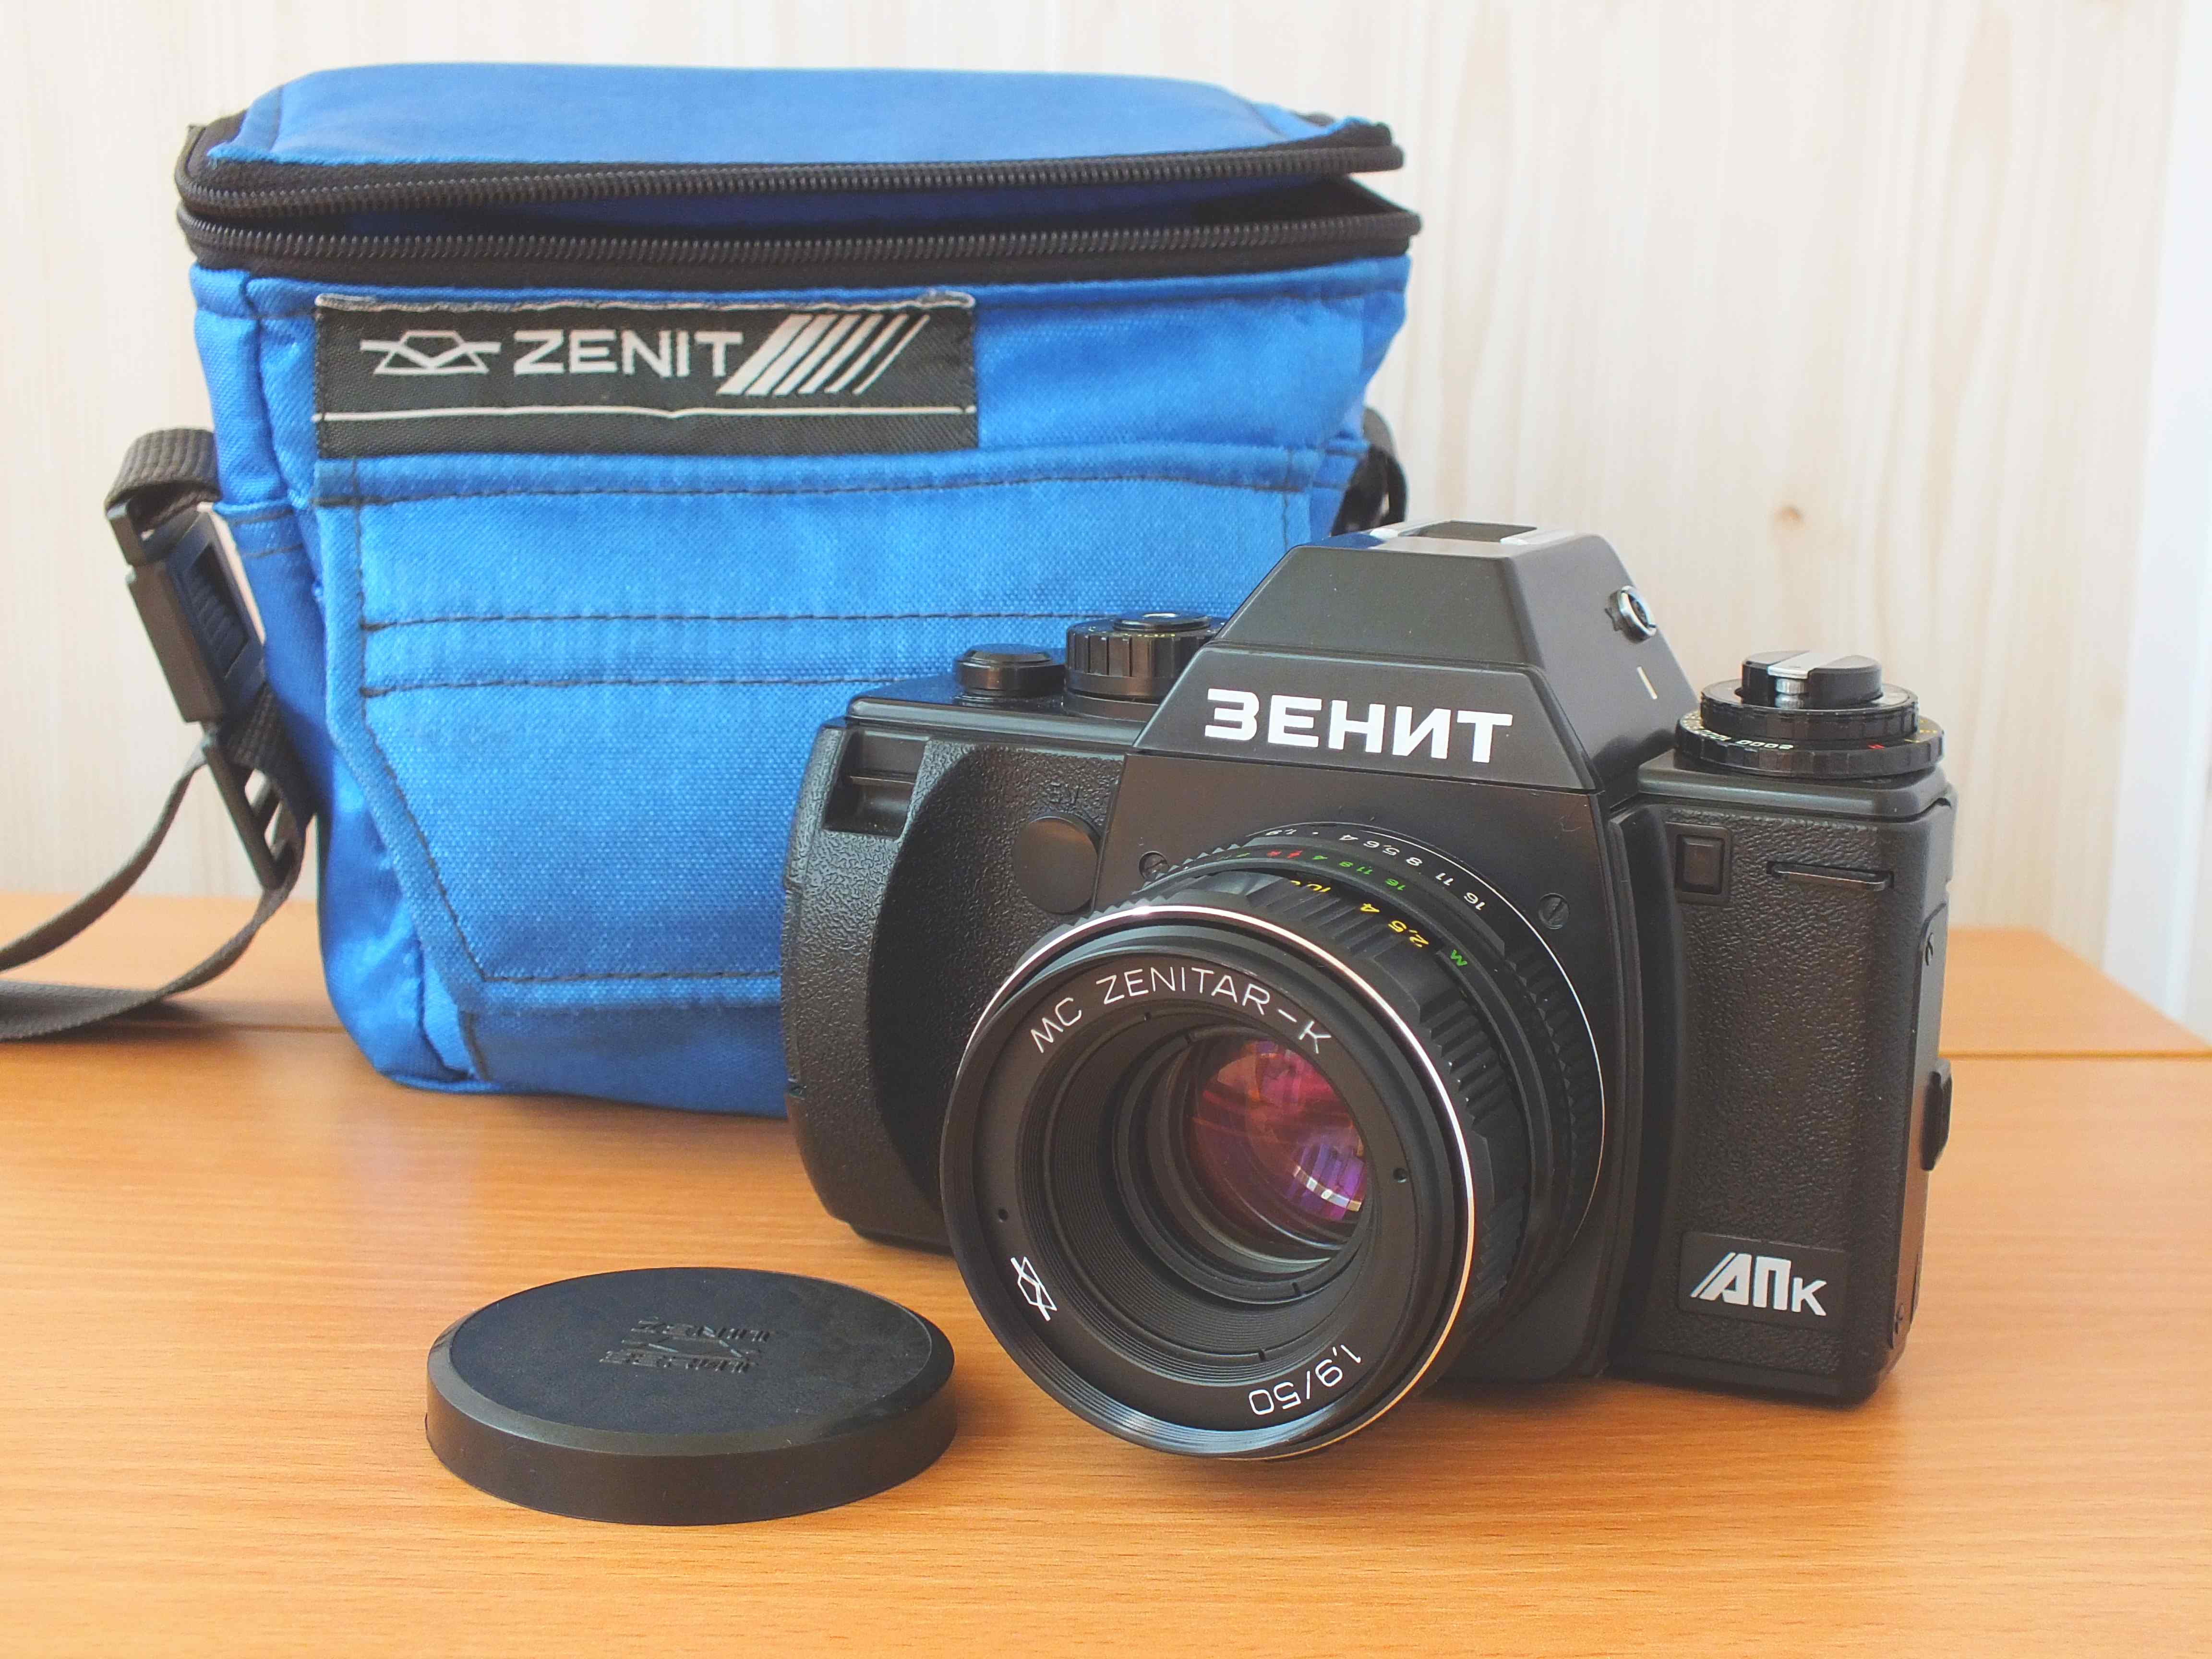 Фотоаппарат Зенит АПк в комплекте с футляром выпуска 1992 года